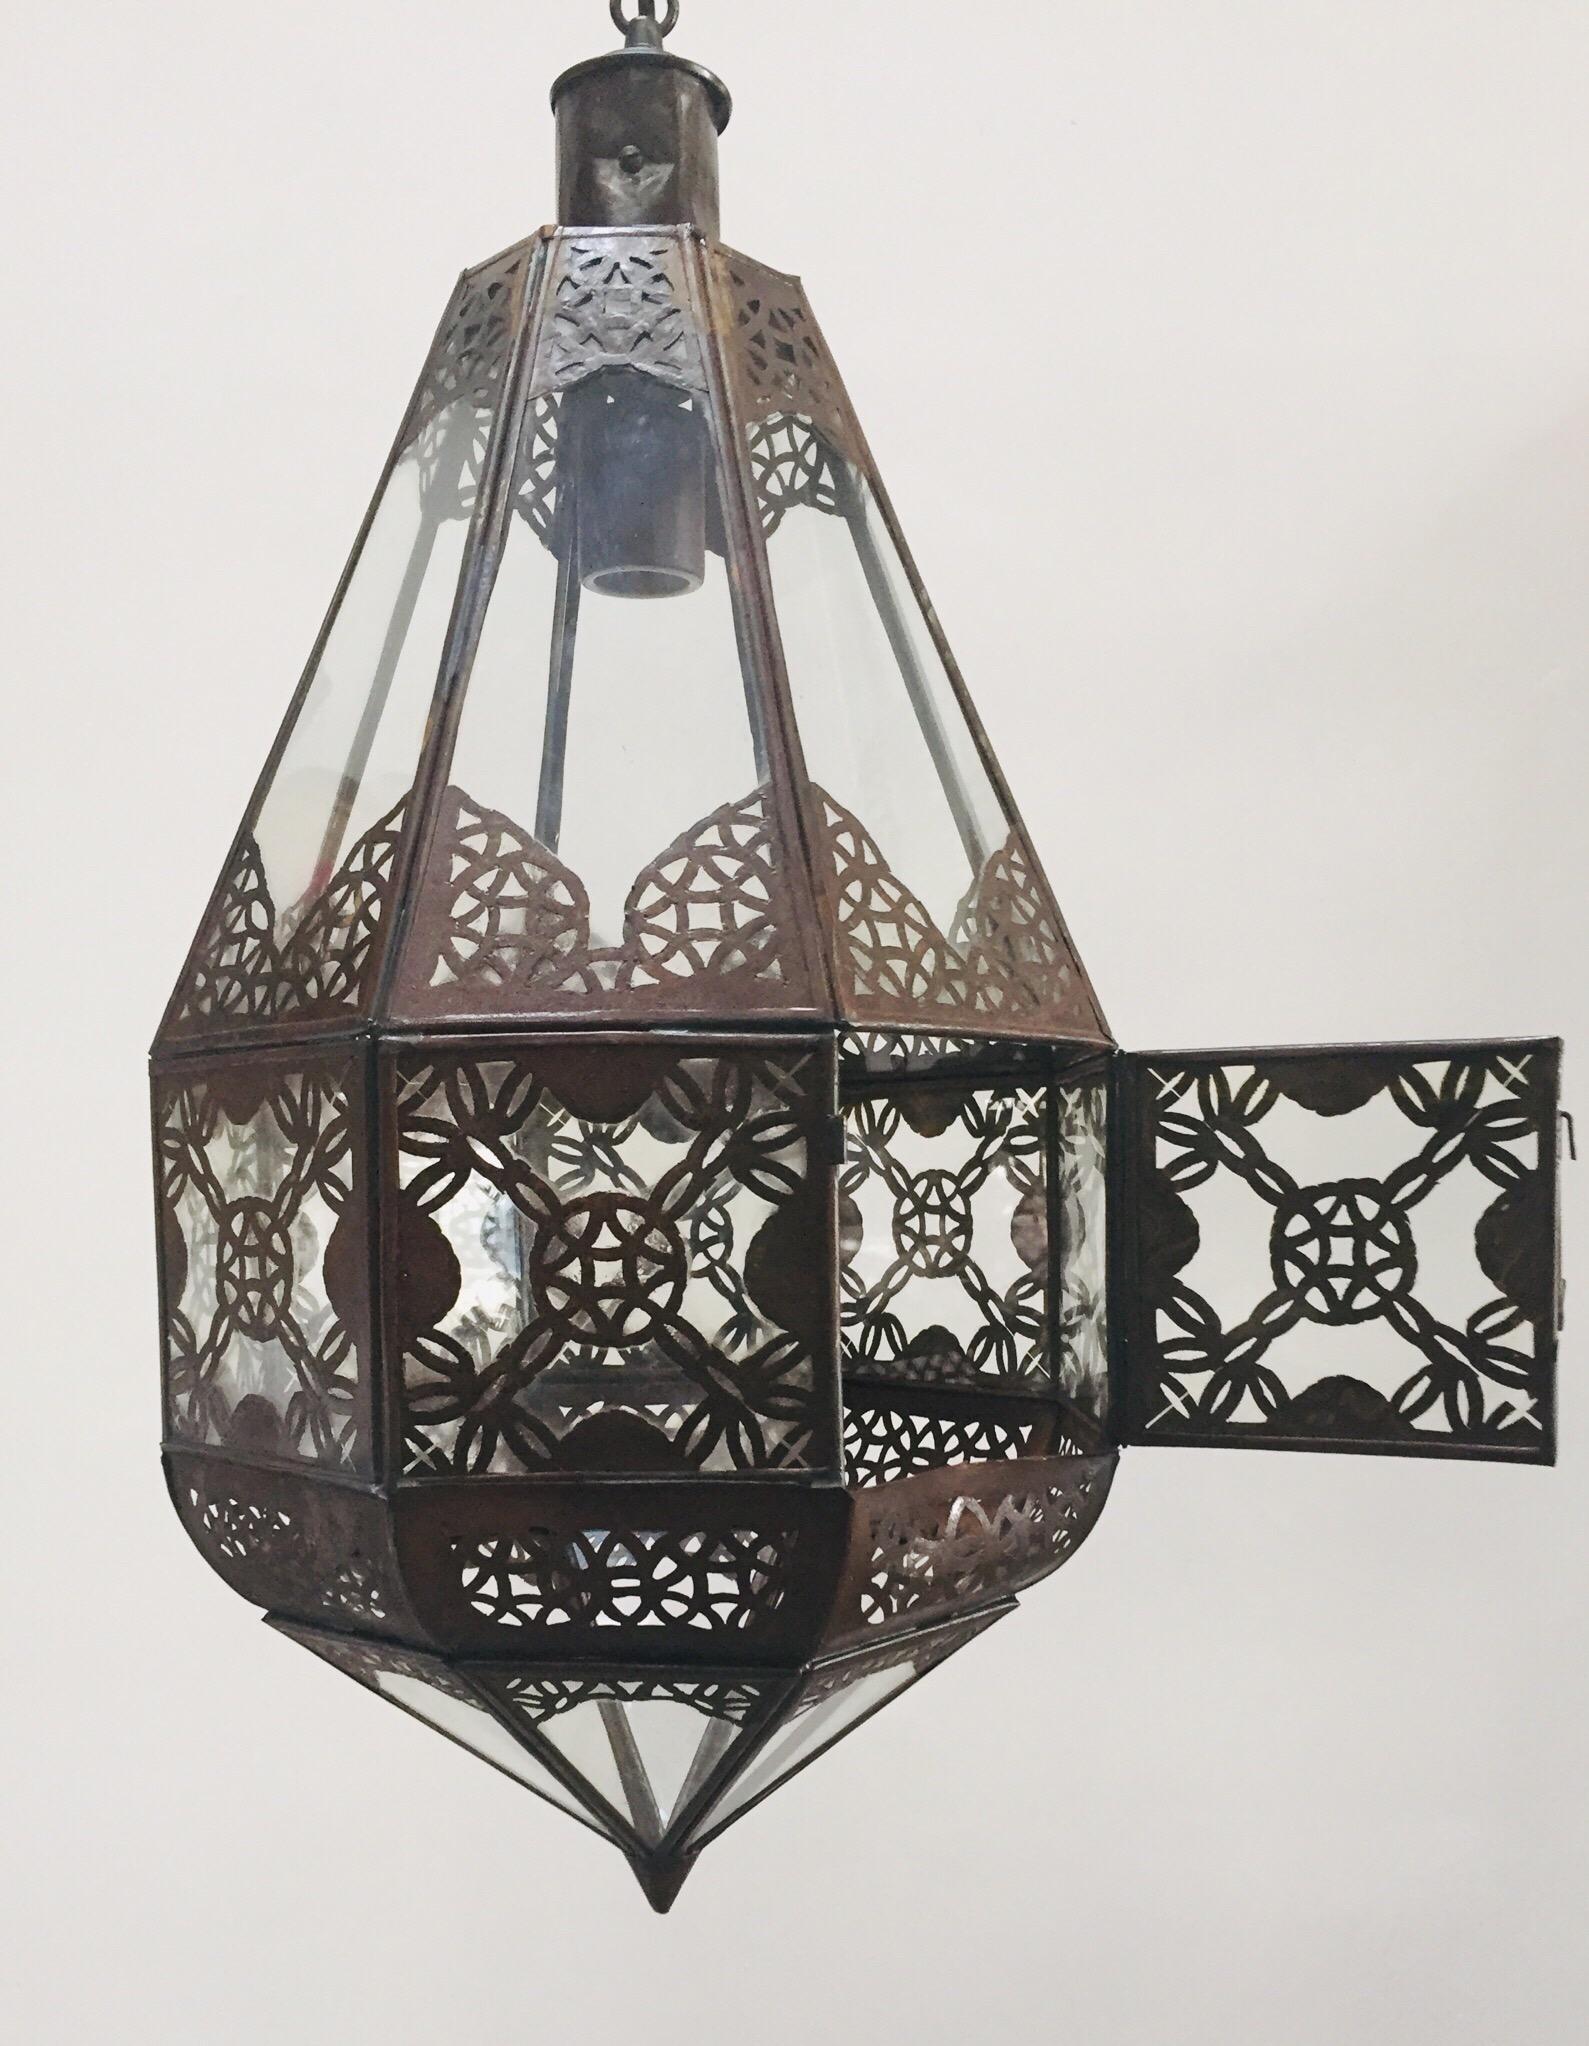 Lanterne marocaine en verre transparent, fabriquée à la main.
Métal finition bronze antique rouillé avec motif ajouré en filigrane mauresque.
Ce luminaire marocain est recâblé pour recevoir une ampoule, des chaînes de 3 pieds et un